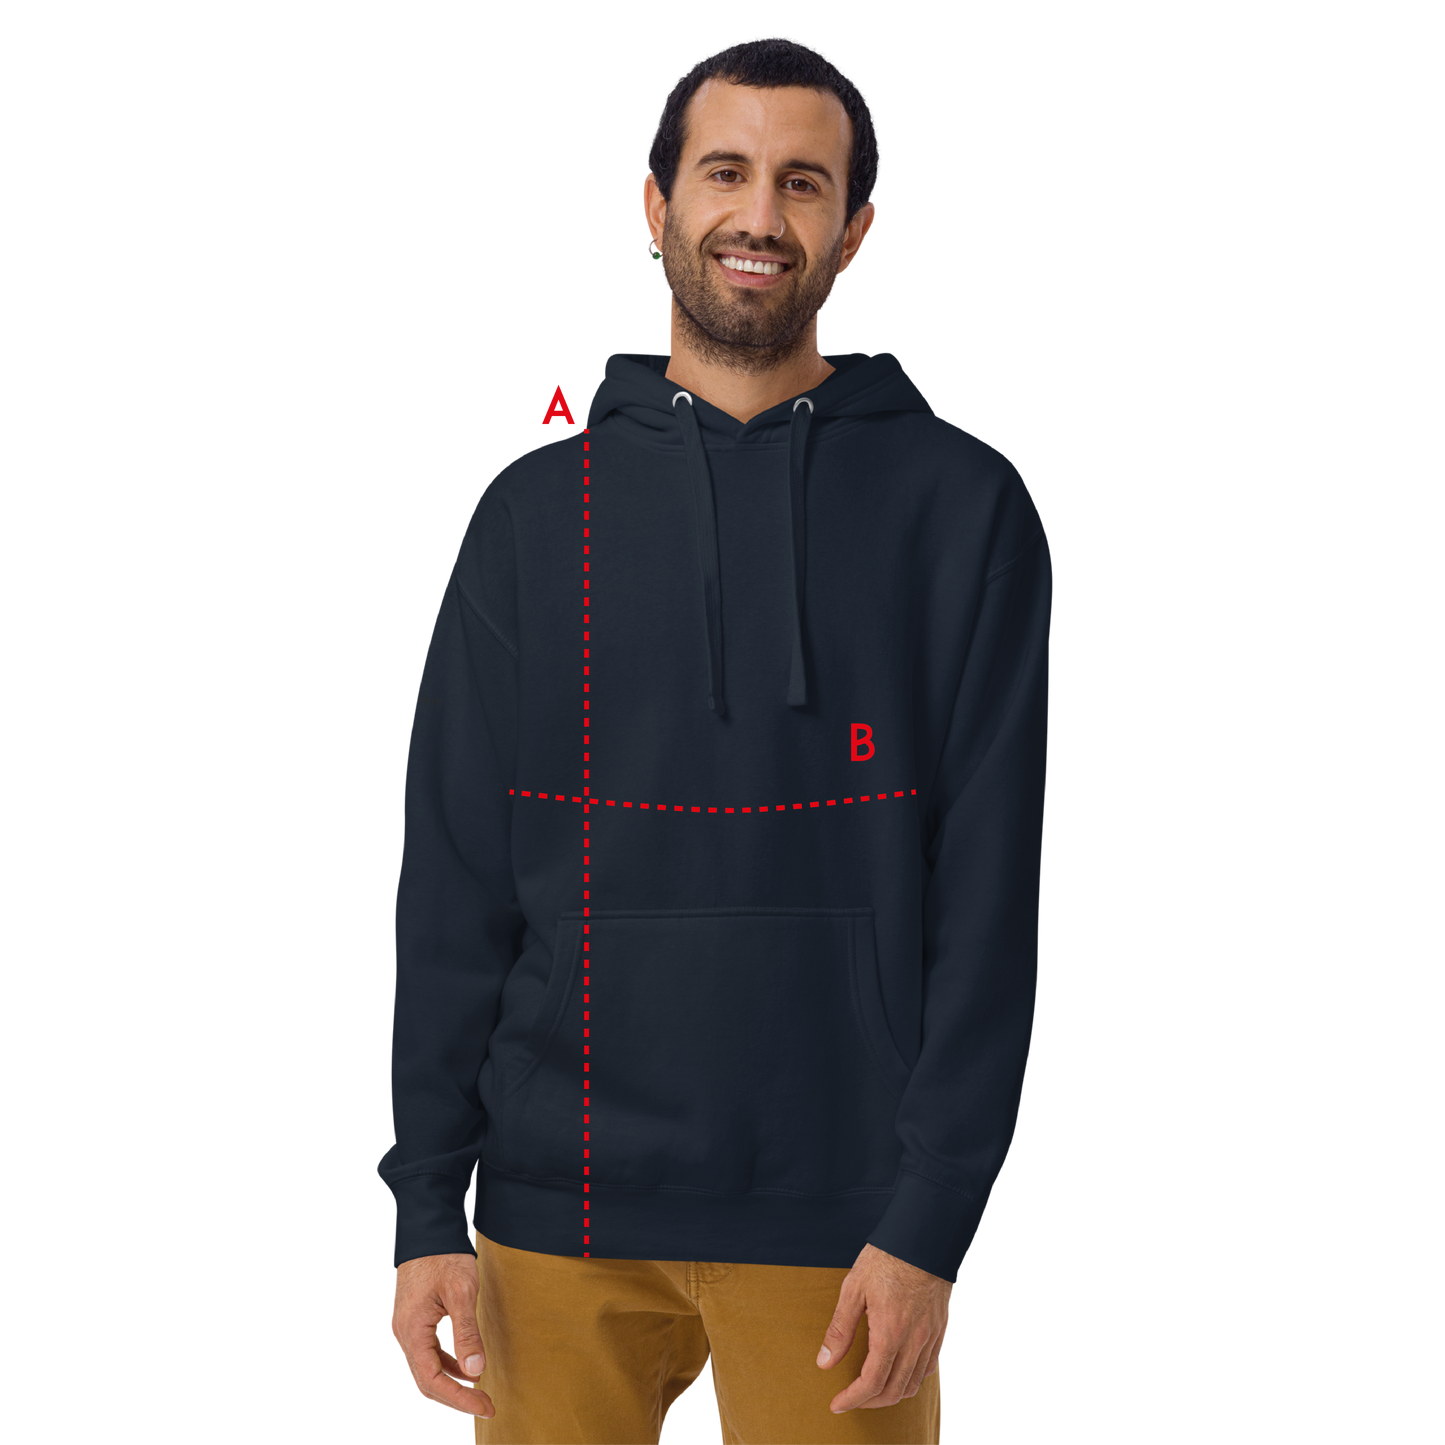 Sweatshirt #RAXIDO // Premium Hoodie with Hood and Pocket // Unisex